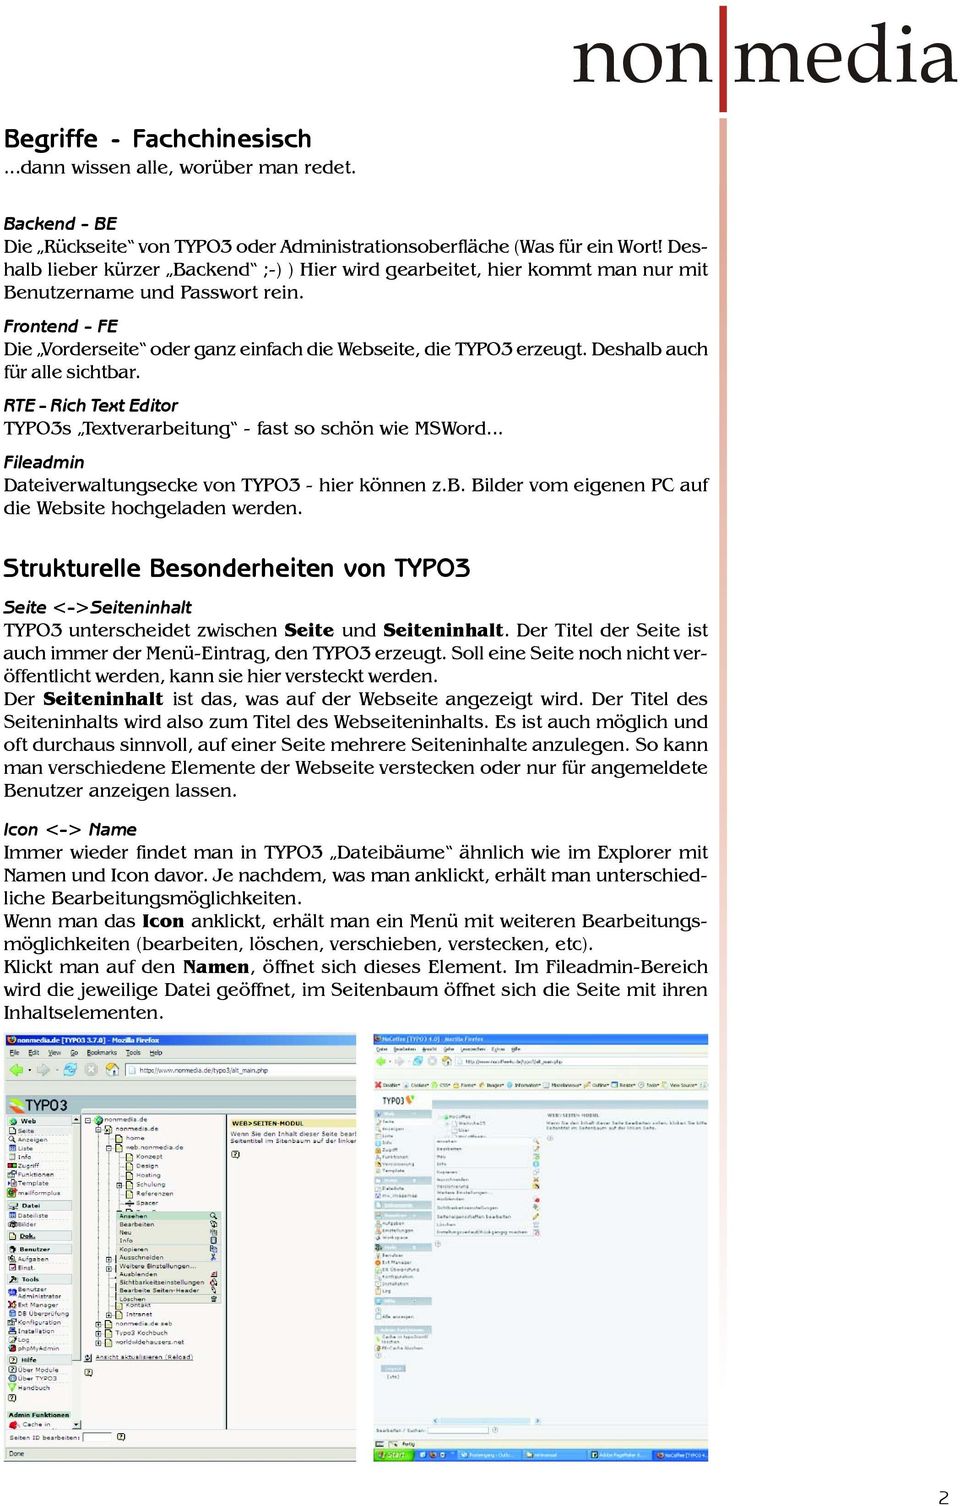 Deshalb auch für alle sichtbar. RTE - Rich Text Editor TYPO3s Textverarbeitung - fast so schön wie MSWord... Fileadmin Dateiverwaltungsecke von TYPO3 - hier können z.b. Bilder vom eigenen PC auf die Website hochgeladen werden.